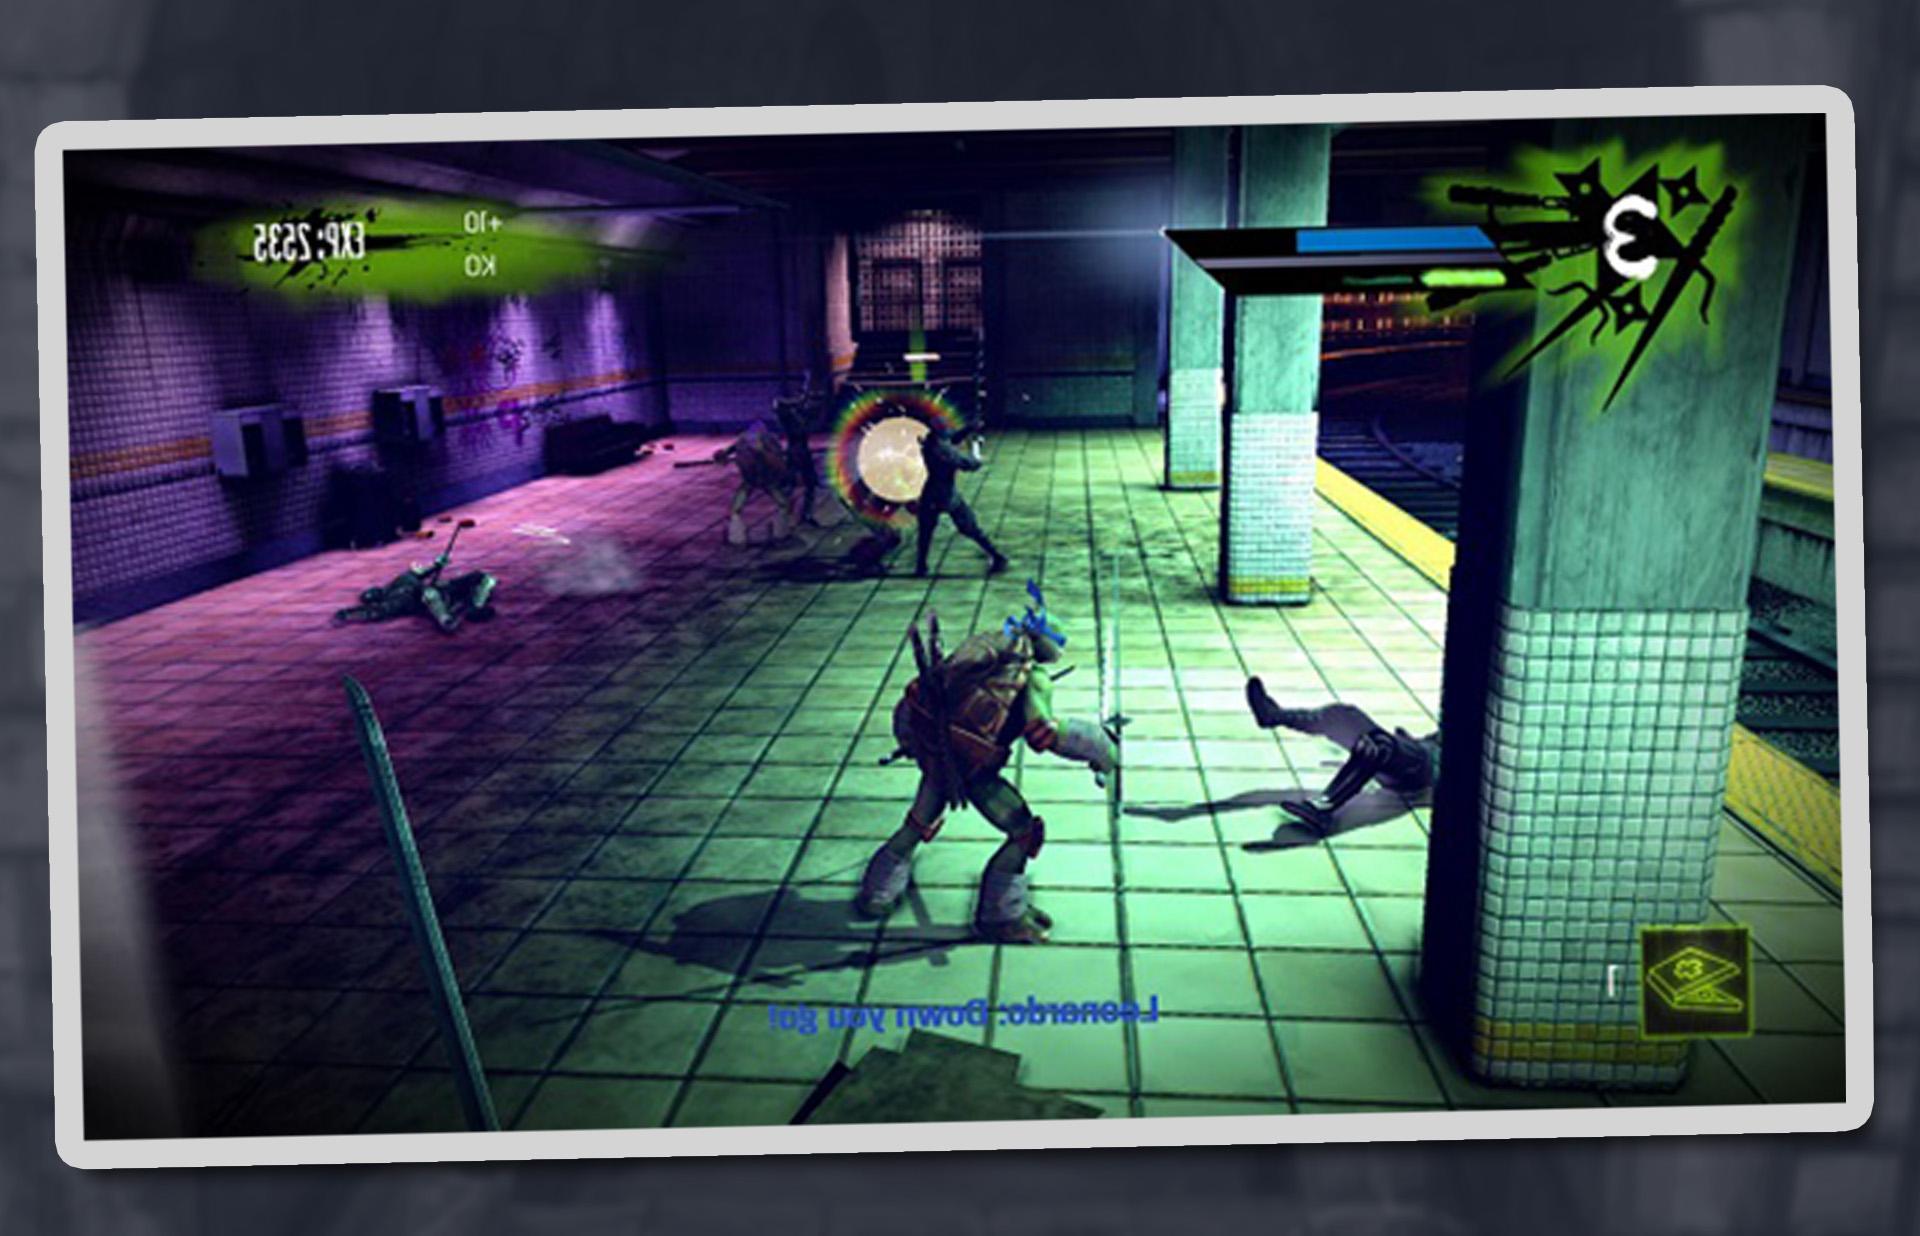 Screenshot 1 of tortuga ninja aventura PSI-40